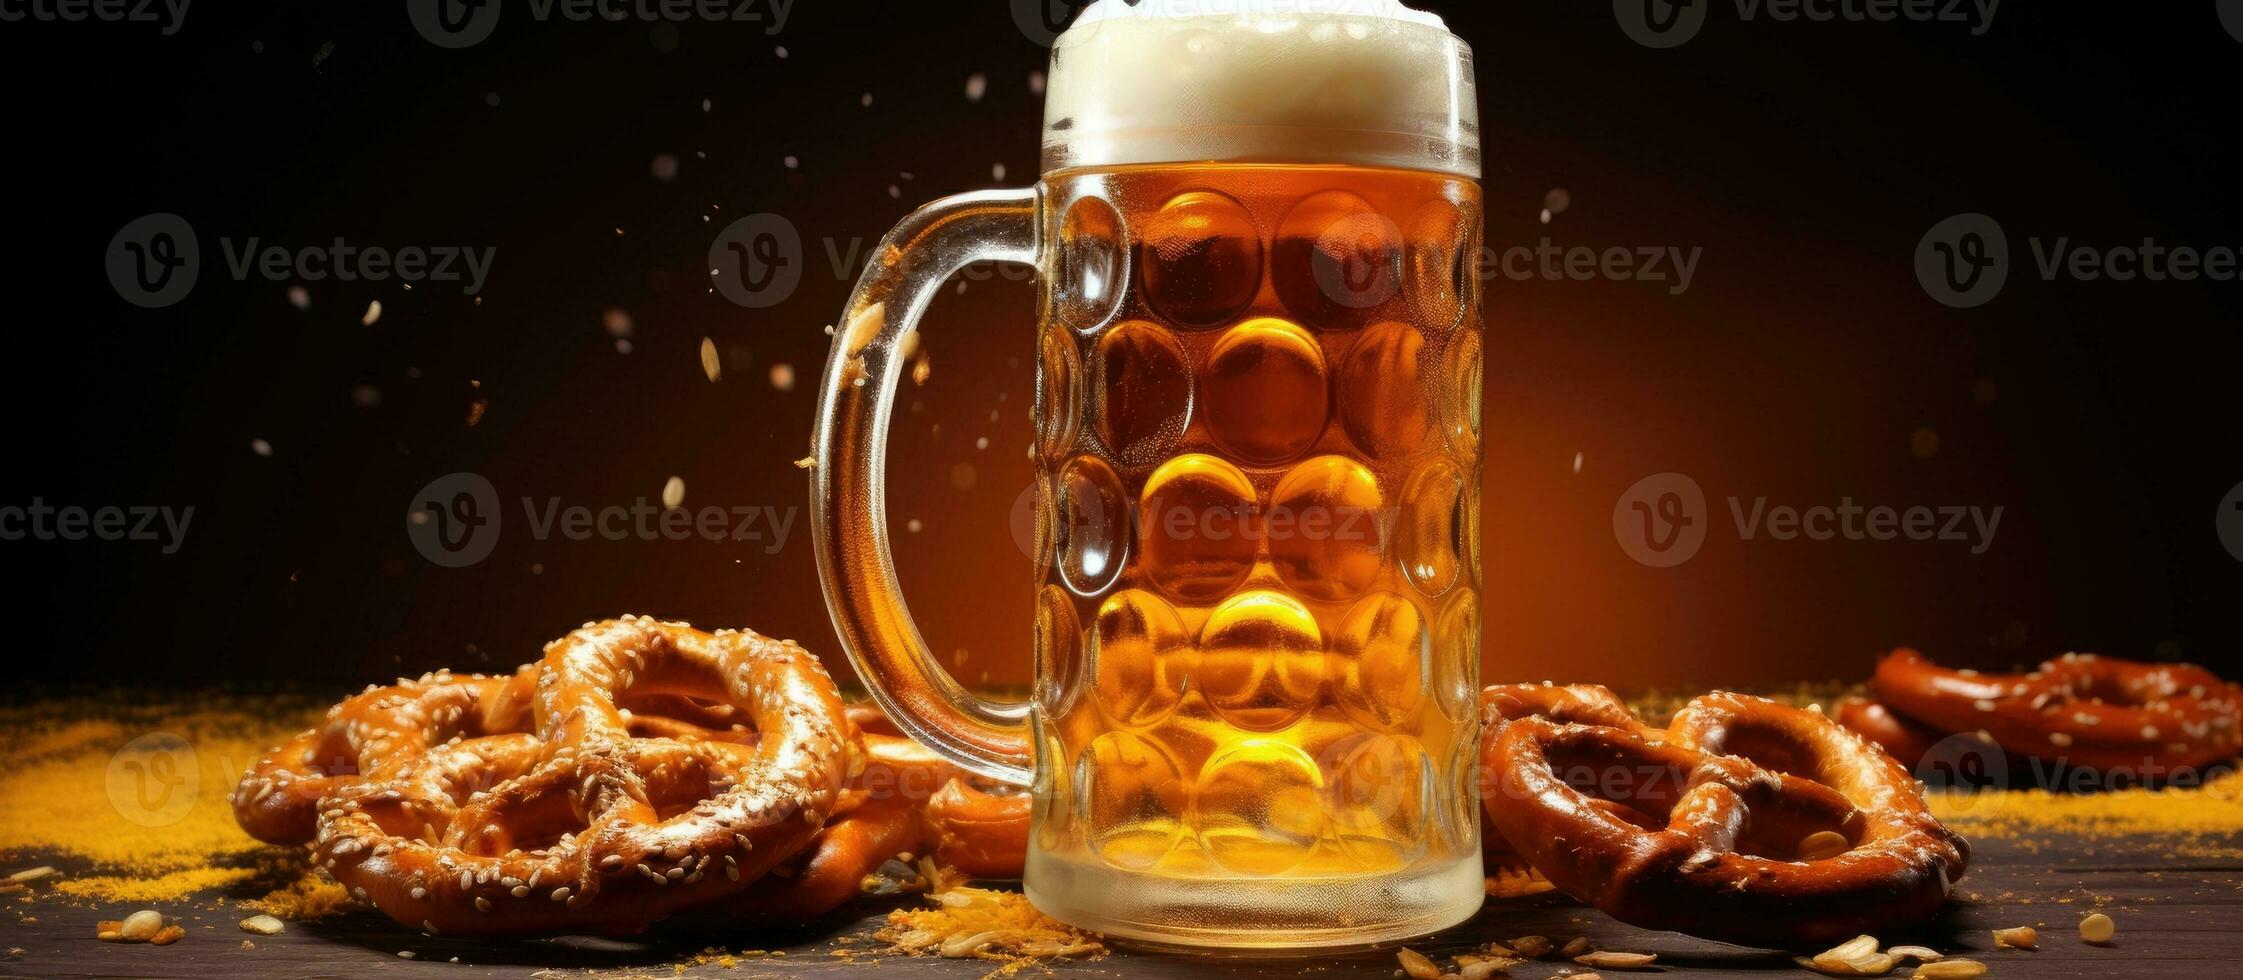 tysk öl ölkrus och mellanmål foto